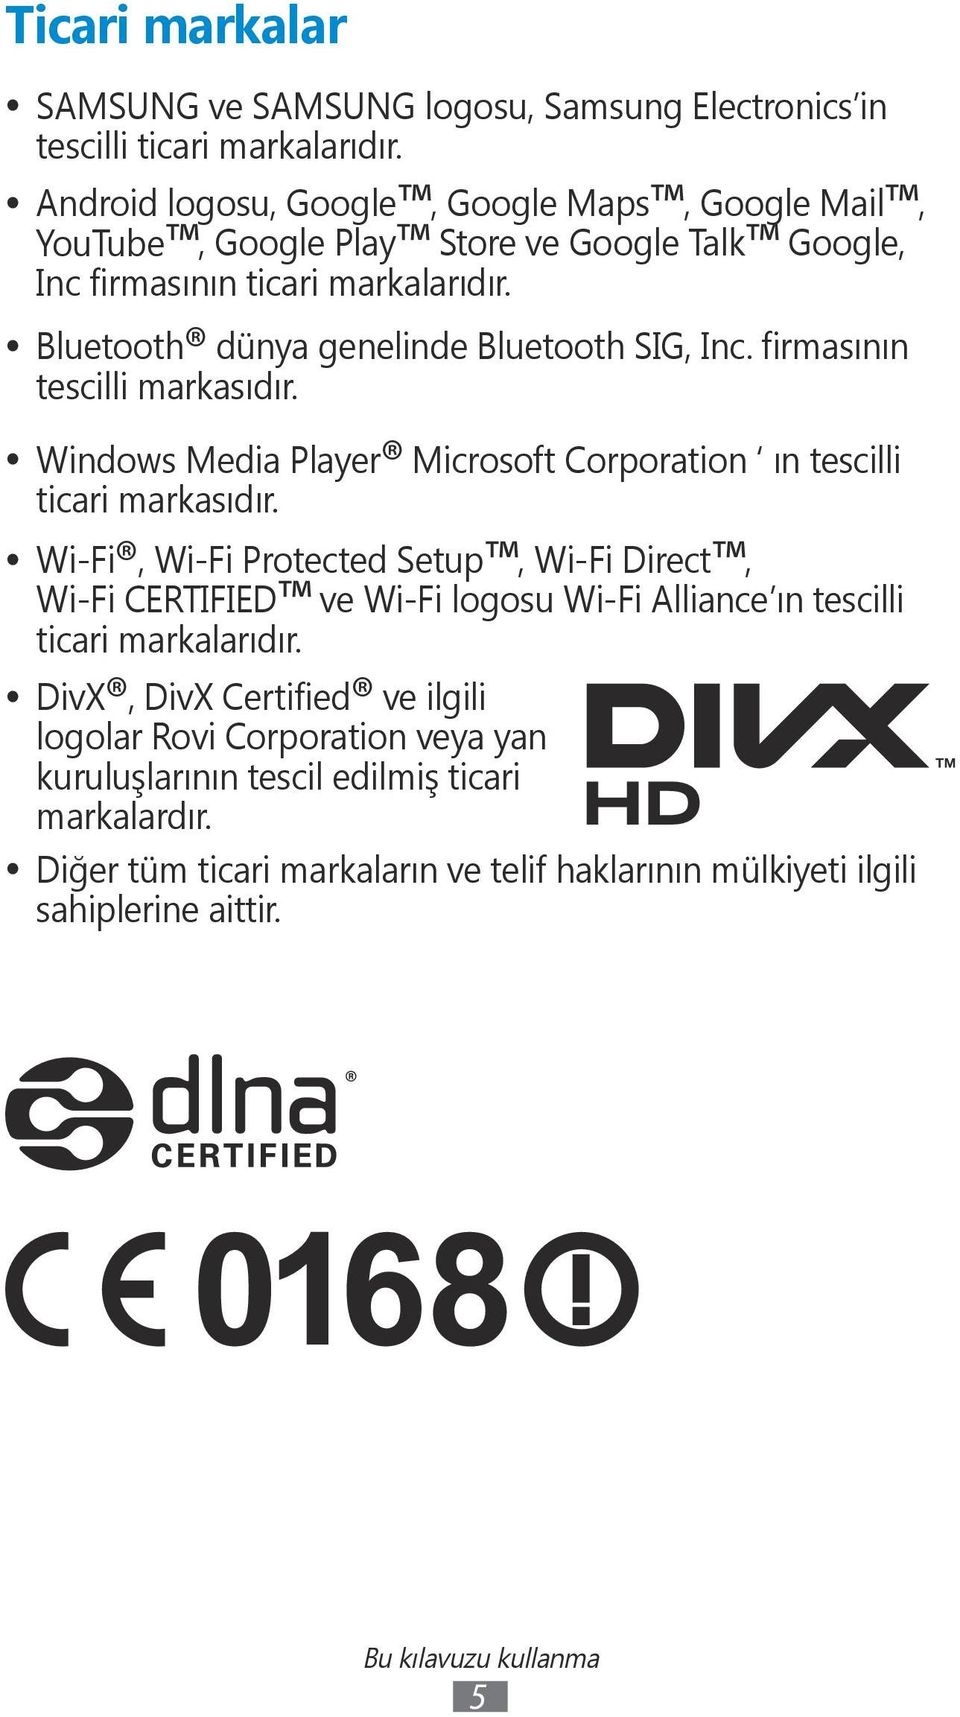 firmasının tescilli markasıdır. Windows Media Player Microsoft Corporation ın tescilli ticari markasıdır.